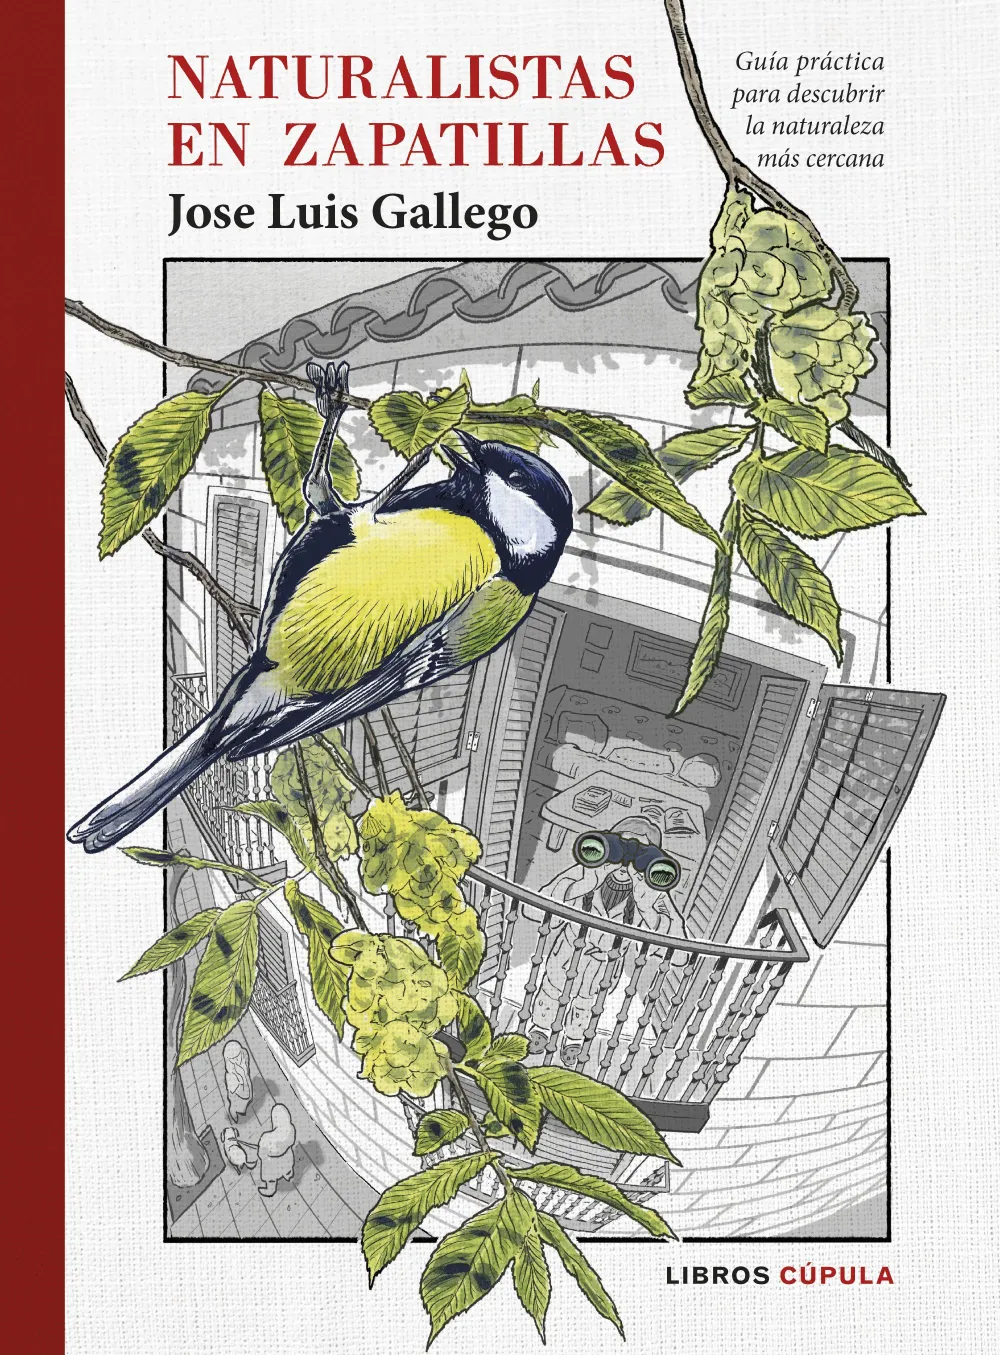 Naturalistas en zapatillas. Jose Luis Gallego